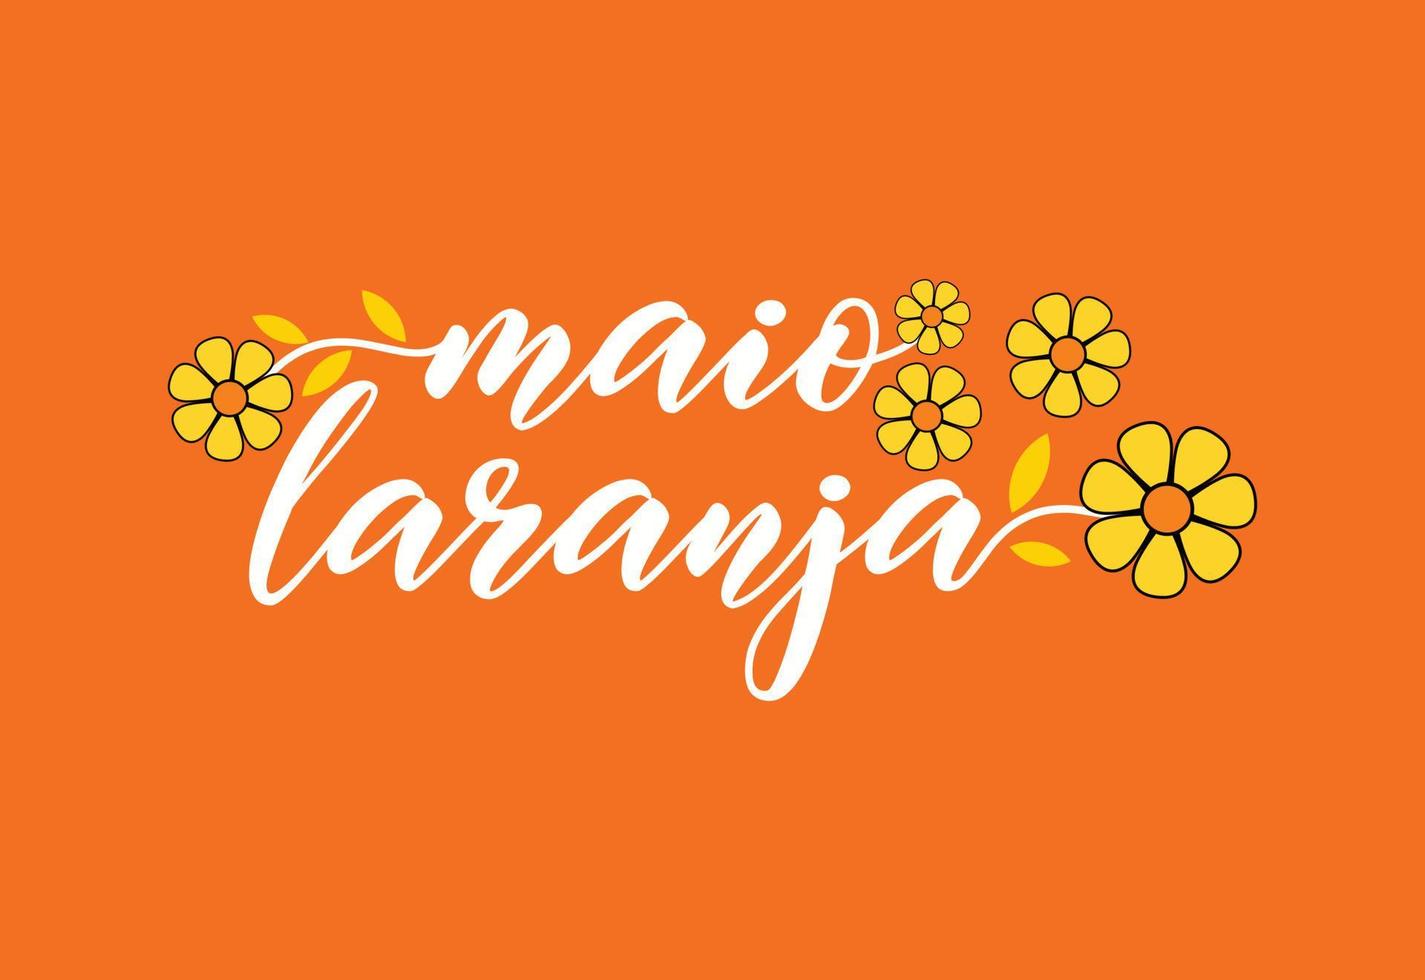 maio laranja. le 18 mai est la journée nationale contre la maltraitance et l'exploitation des enfants au brésil vecteur